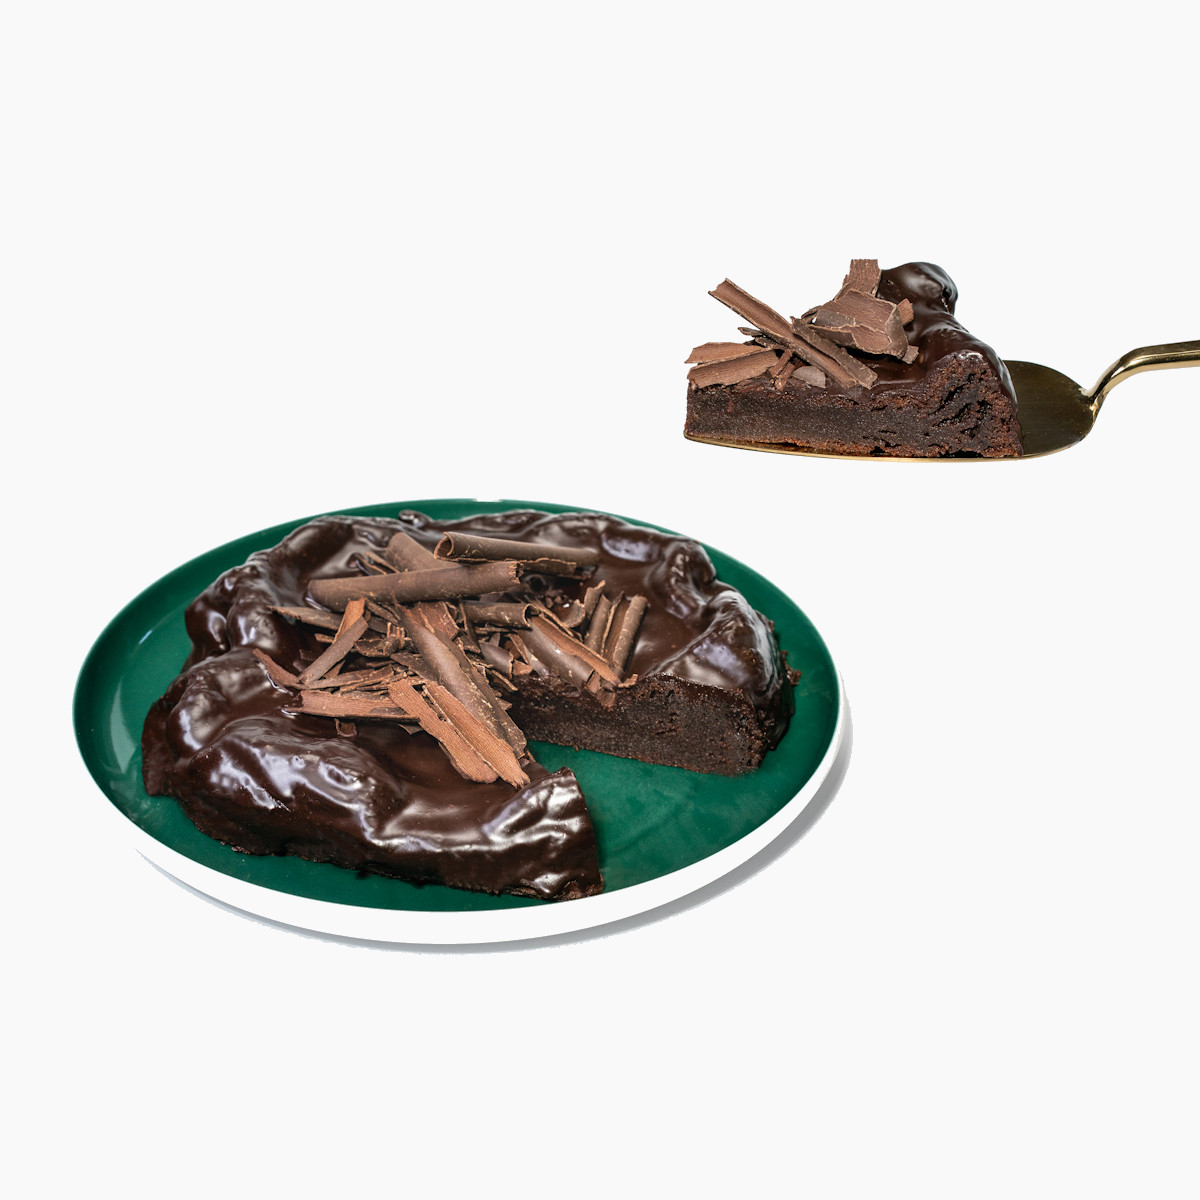 Porcový kousek Čokodortu Originál na dezertní lžíci, ukazující bohatou vrstvu čokoládové ganache a hobliny